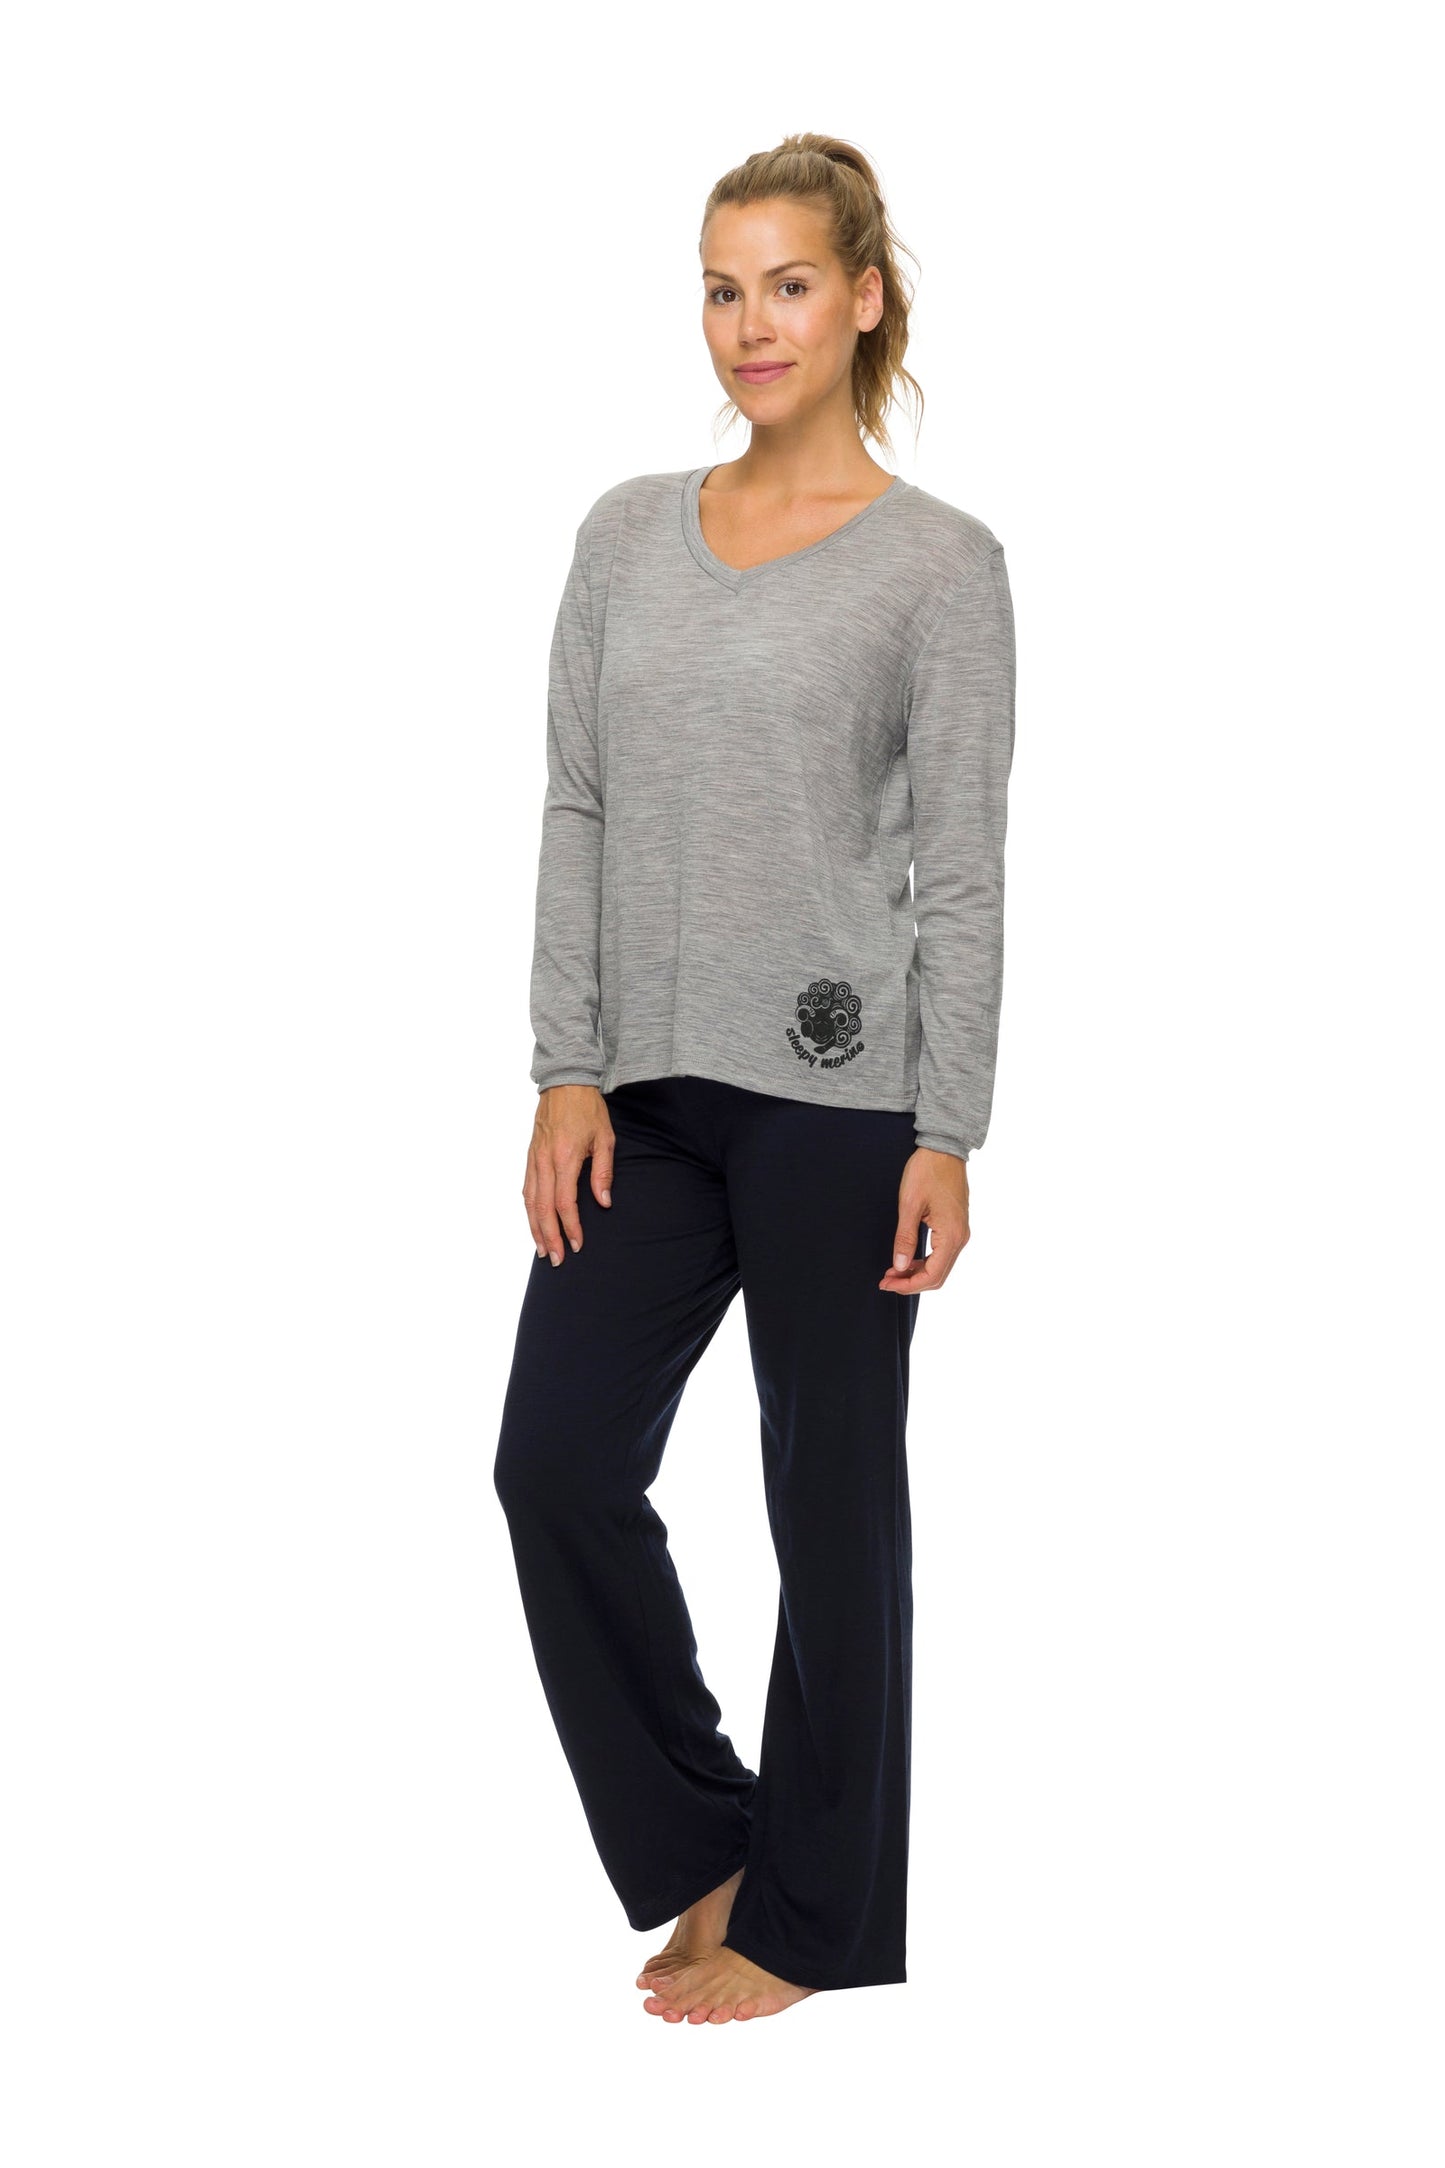 Women's Long Sleeve Pyjama Top | 100% Merino Wool Grey Marle SALE